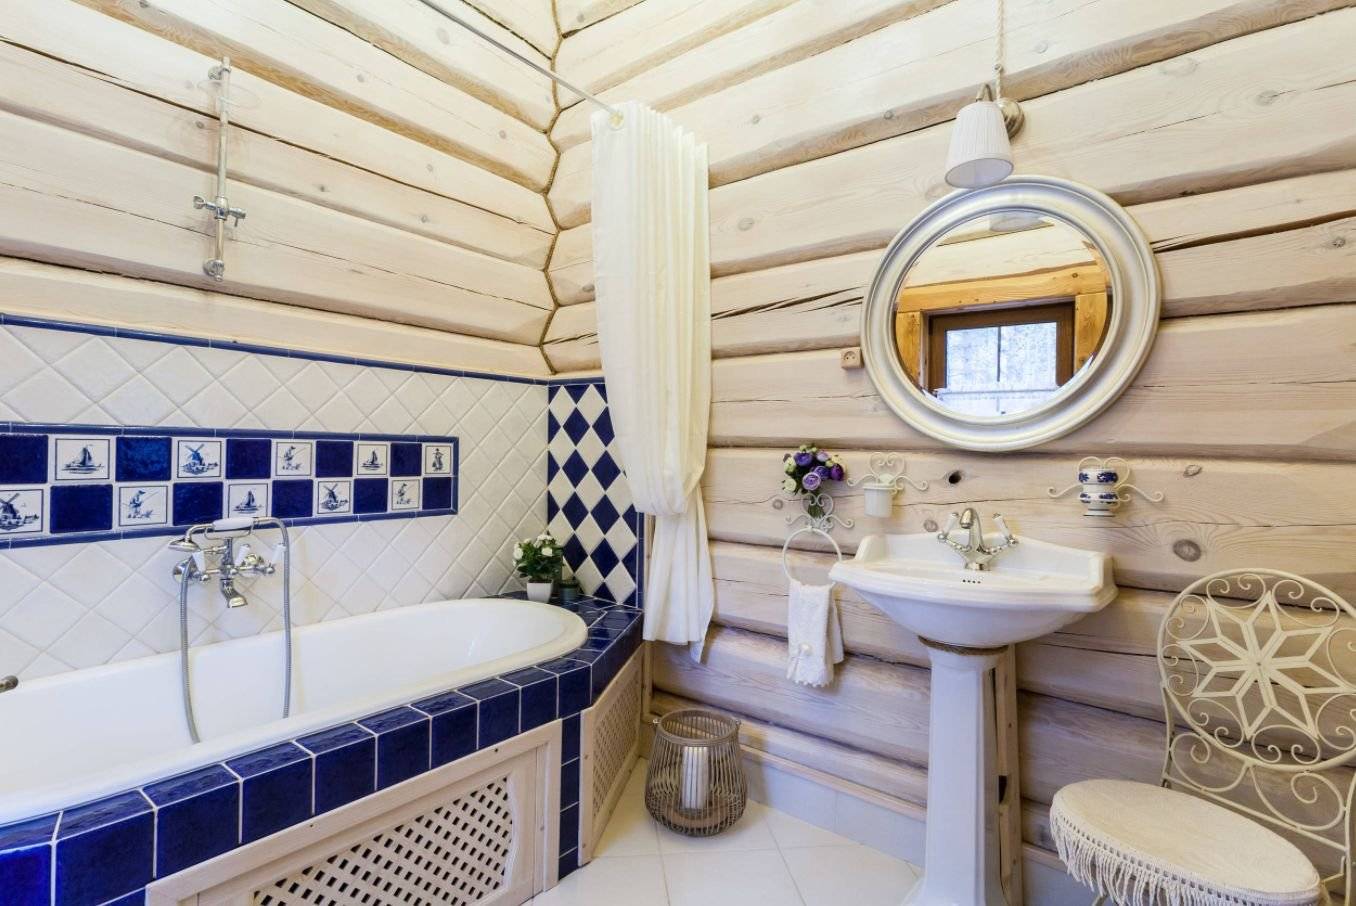 Ванная комната в стиле кантри: мебель, фото и аксессуары - дизайн и интерьер